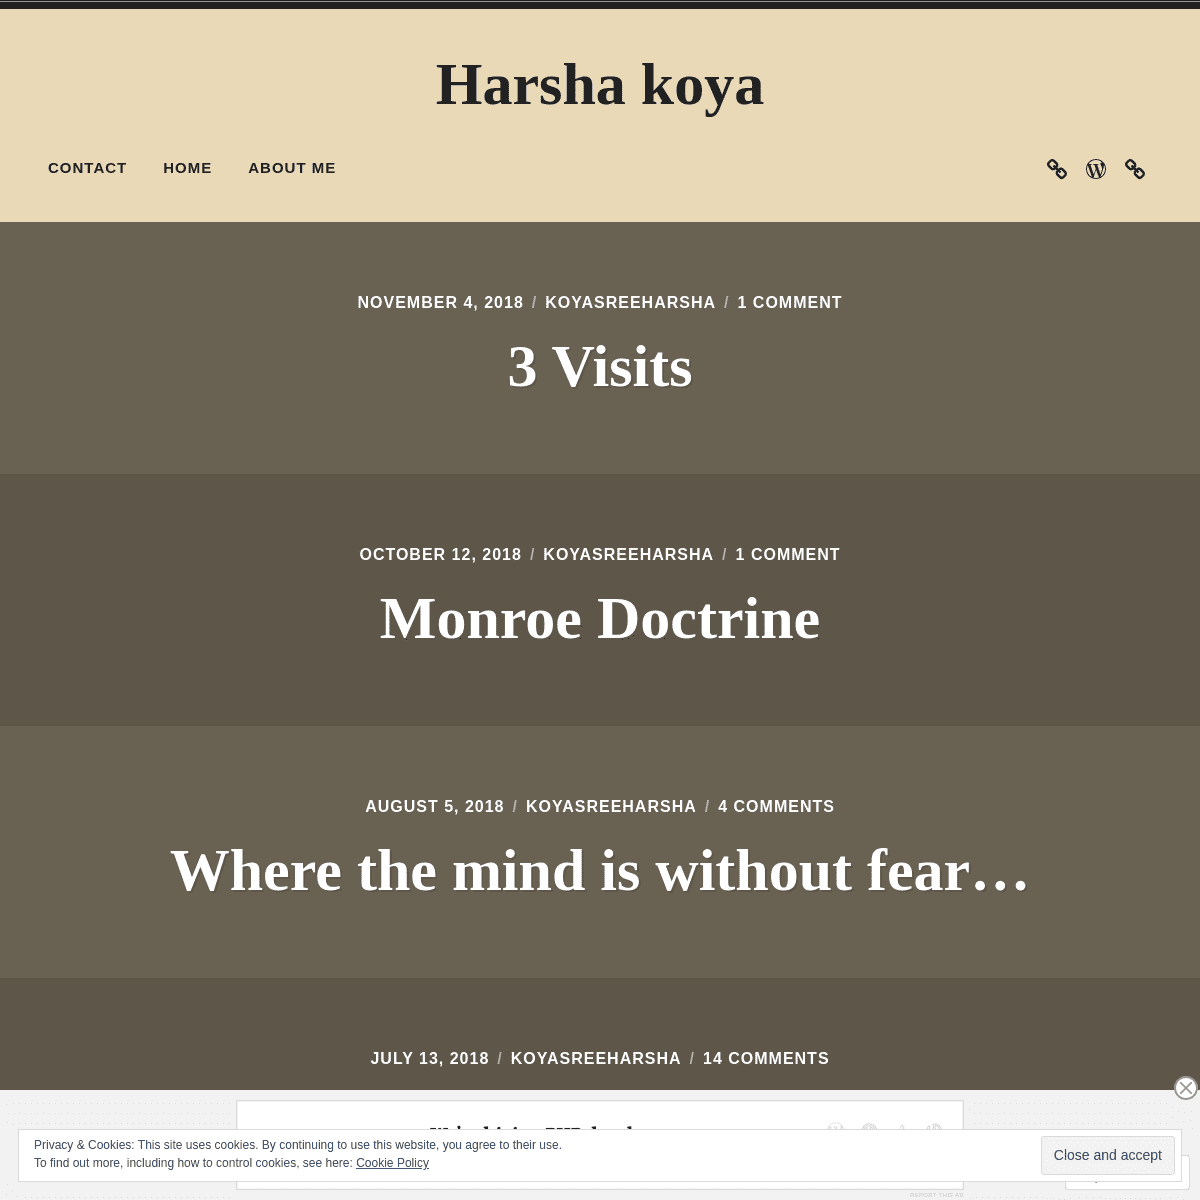 A complete backup of koyasreeharsha.com